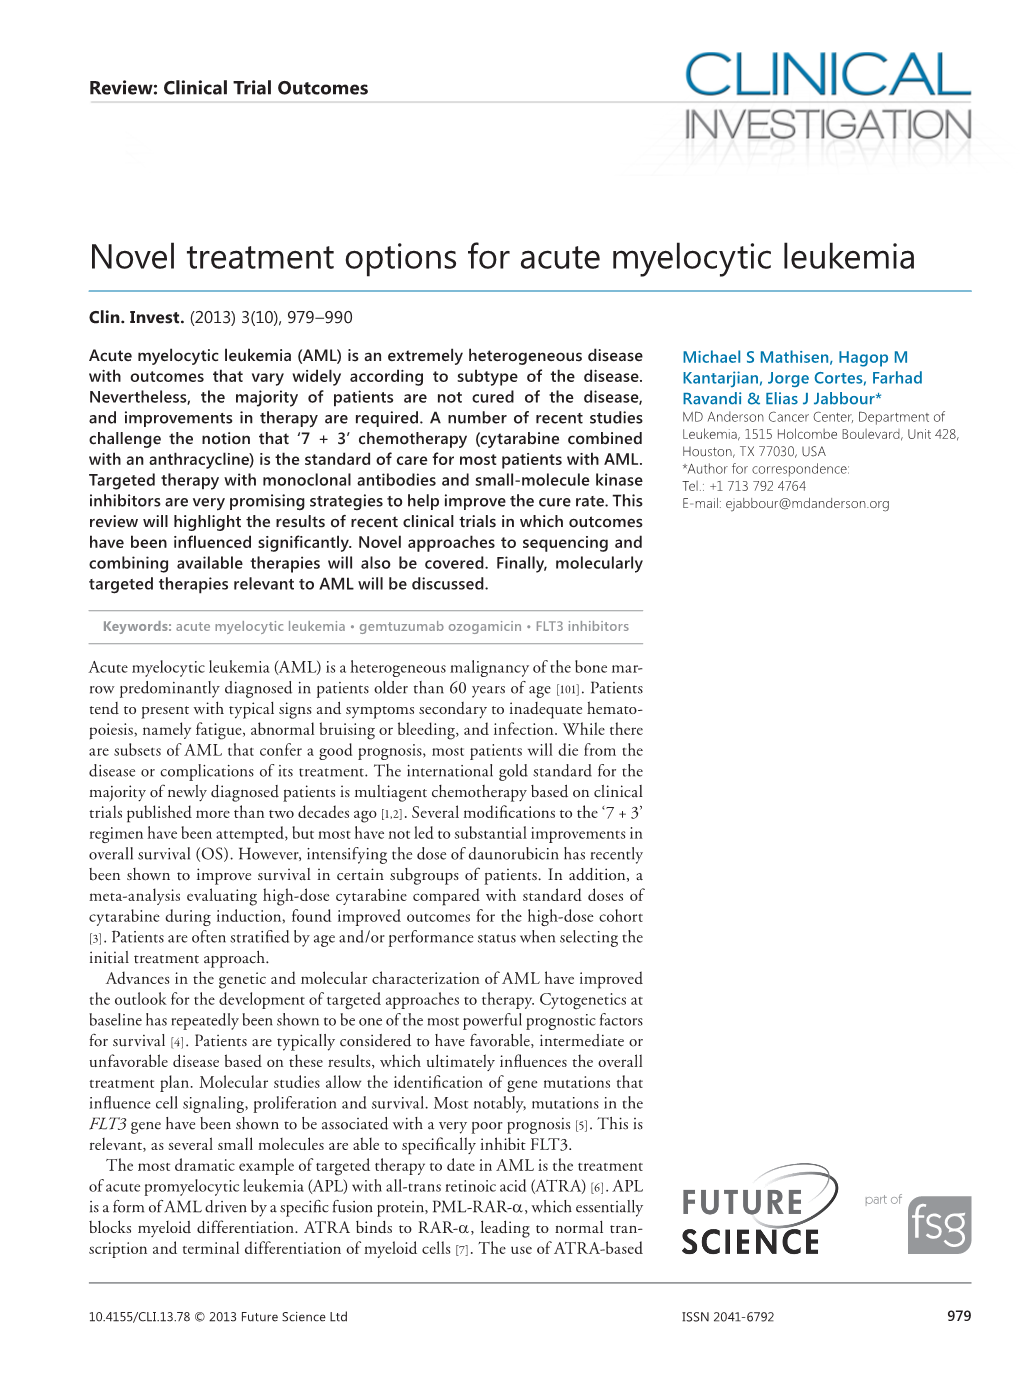 Novel Treatment Options for Acute Myelocytic Leukemia